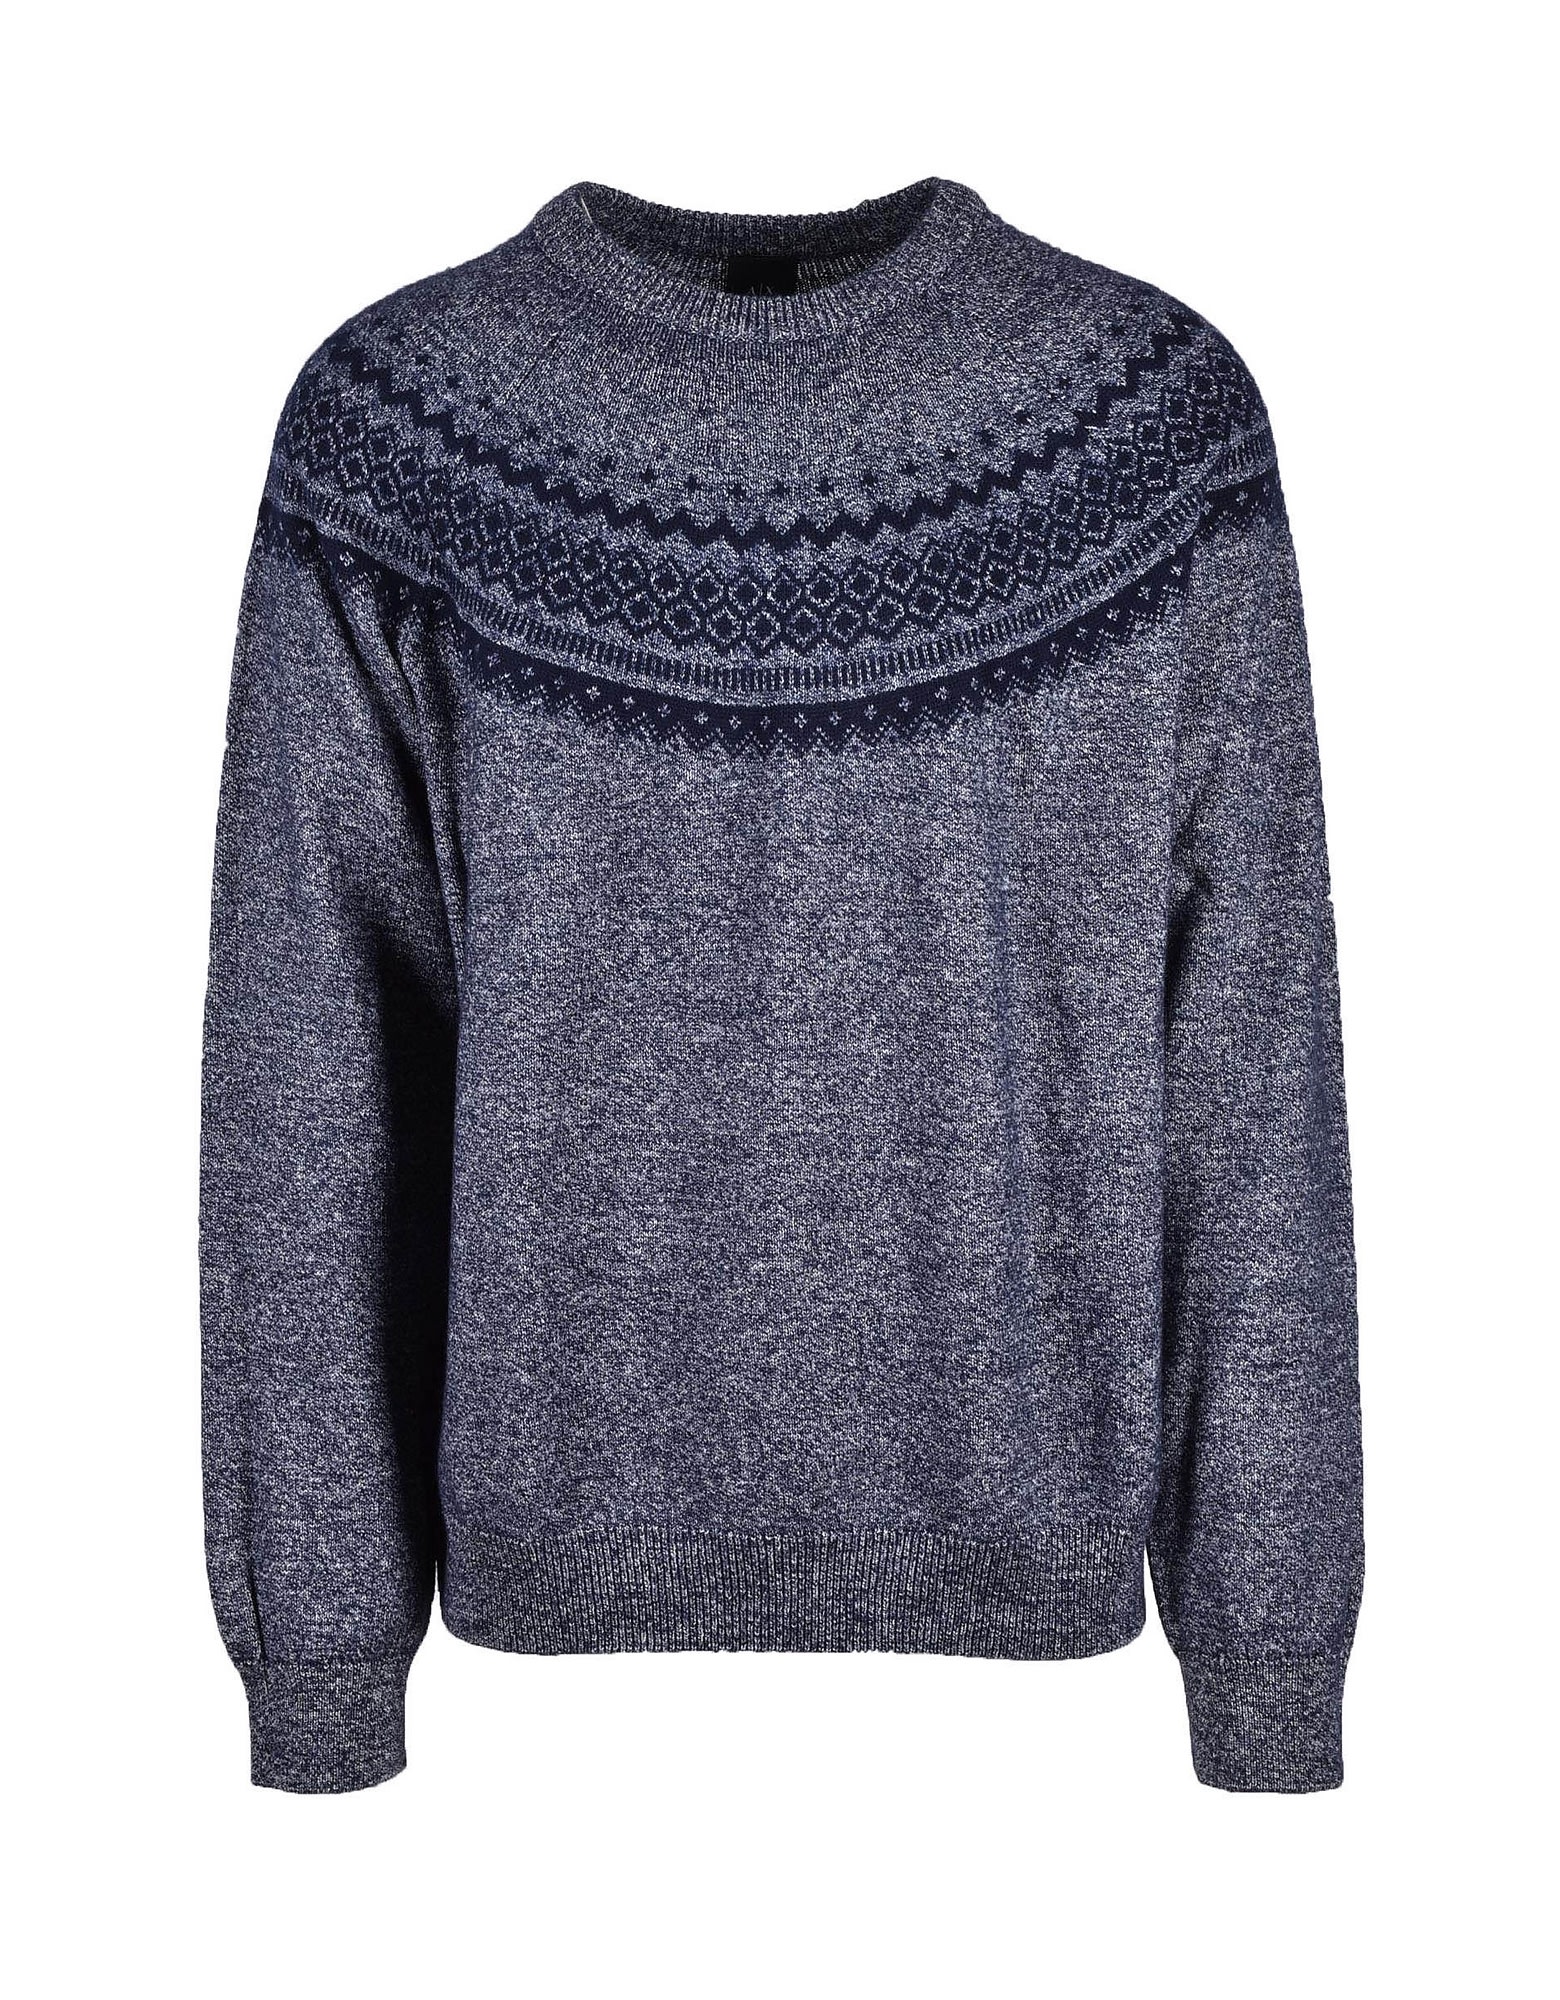 Armani Collezioni Mens Blue / Gray Sweater